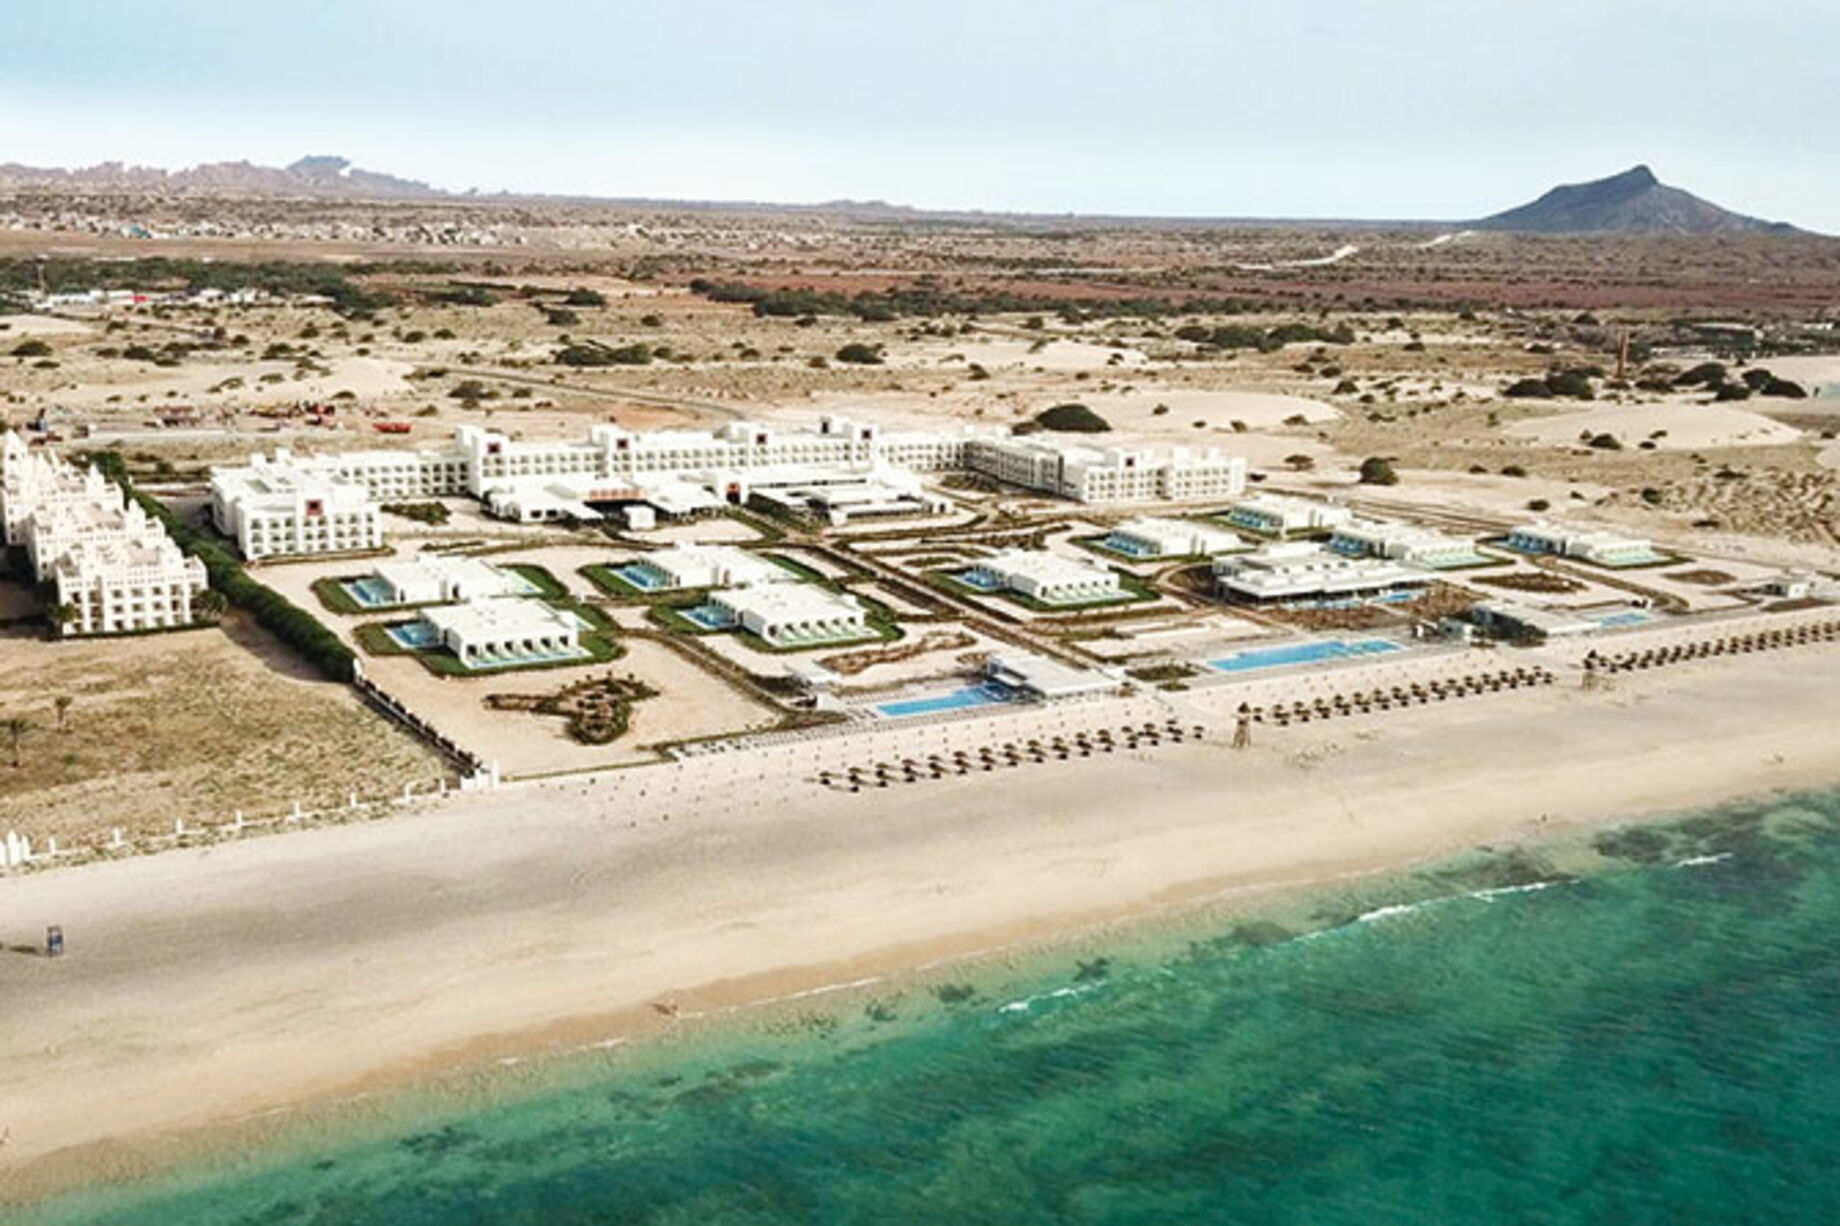 RIU opens its fifth hotel in Cape Verde